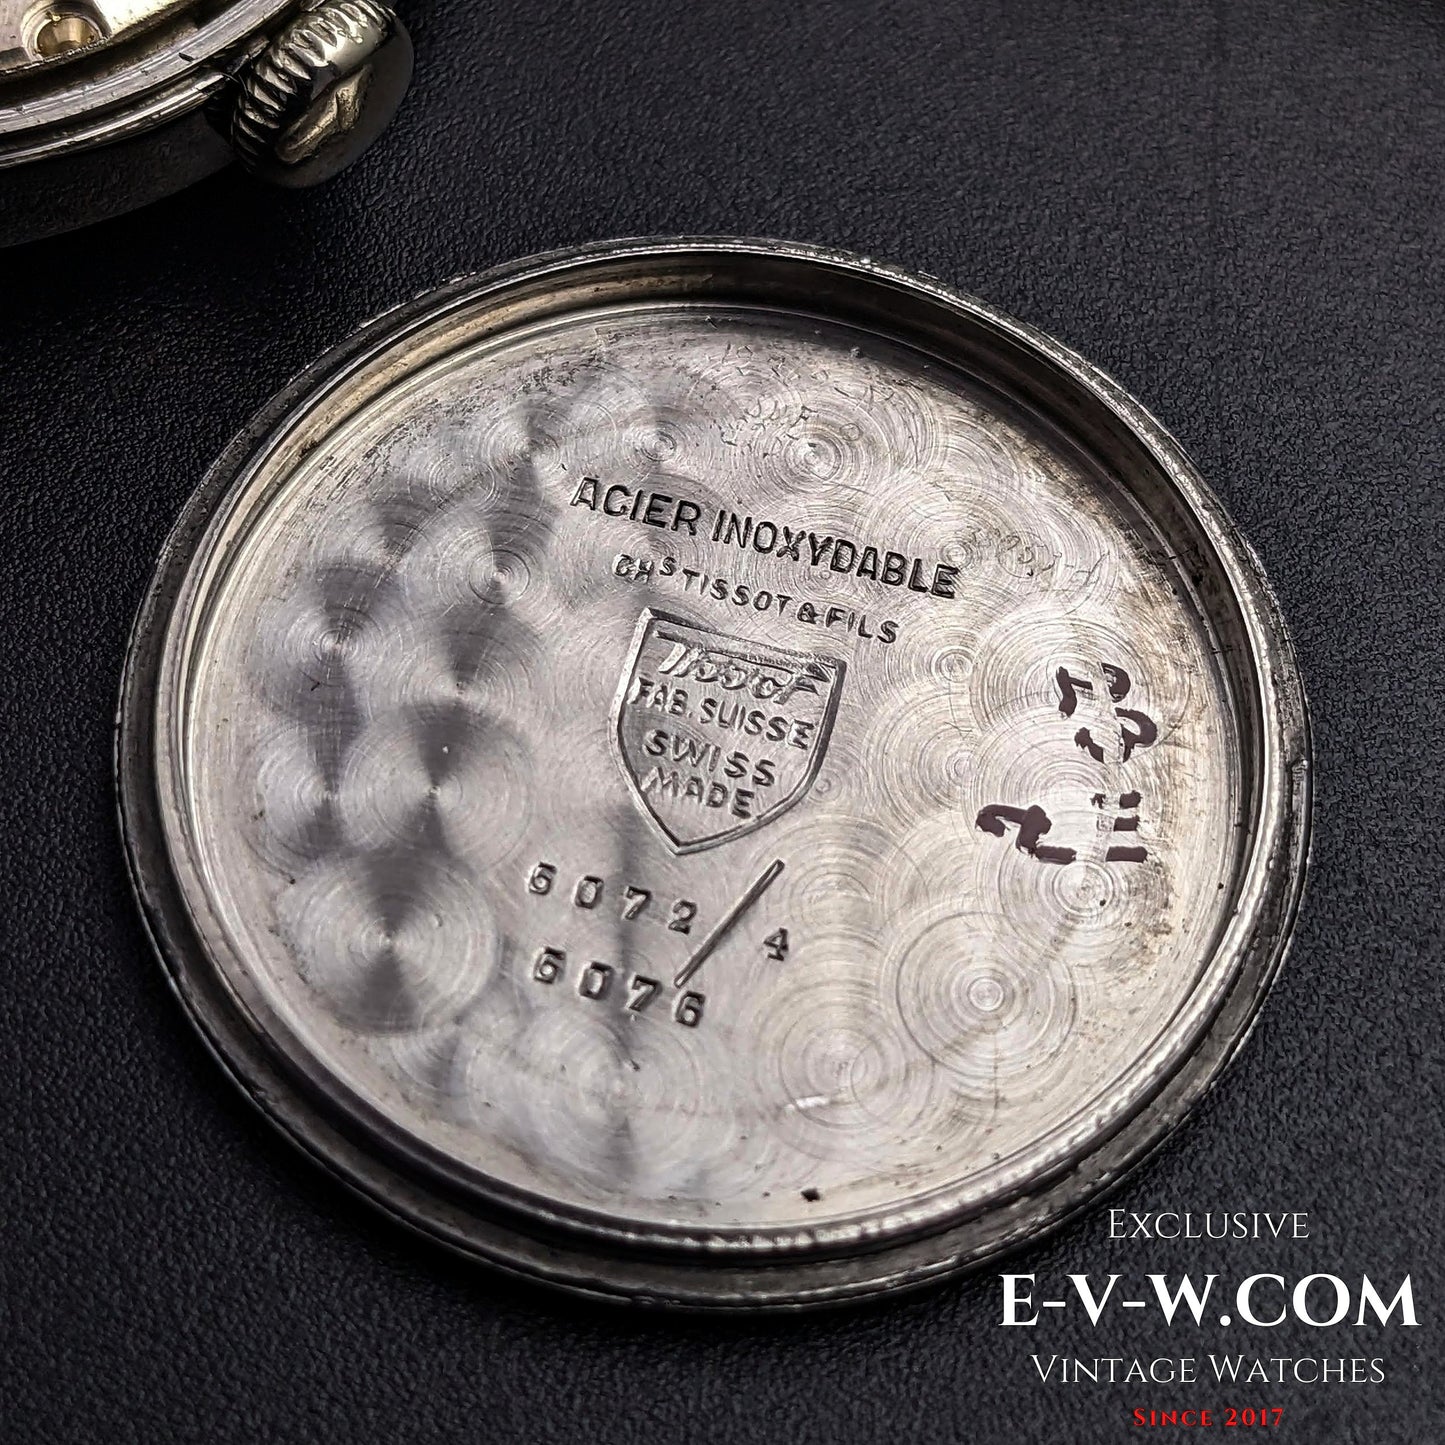 Tissot "NON MAGNETIC" WWII Vintage 1940s /  Bull's eye dial / Cal.27.3  / Srew Back